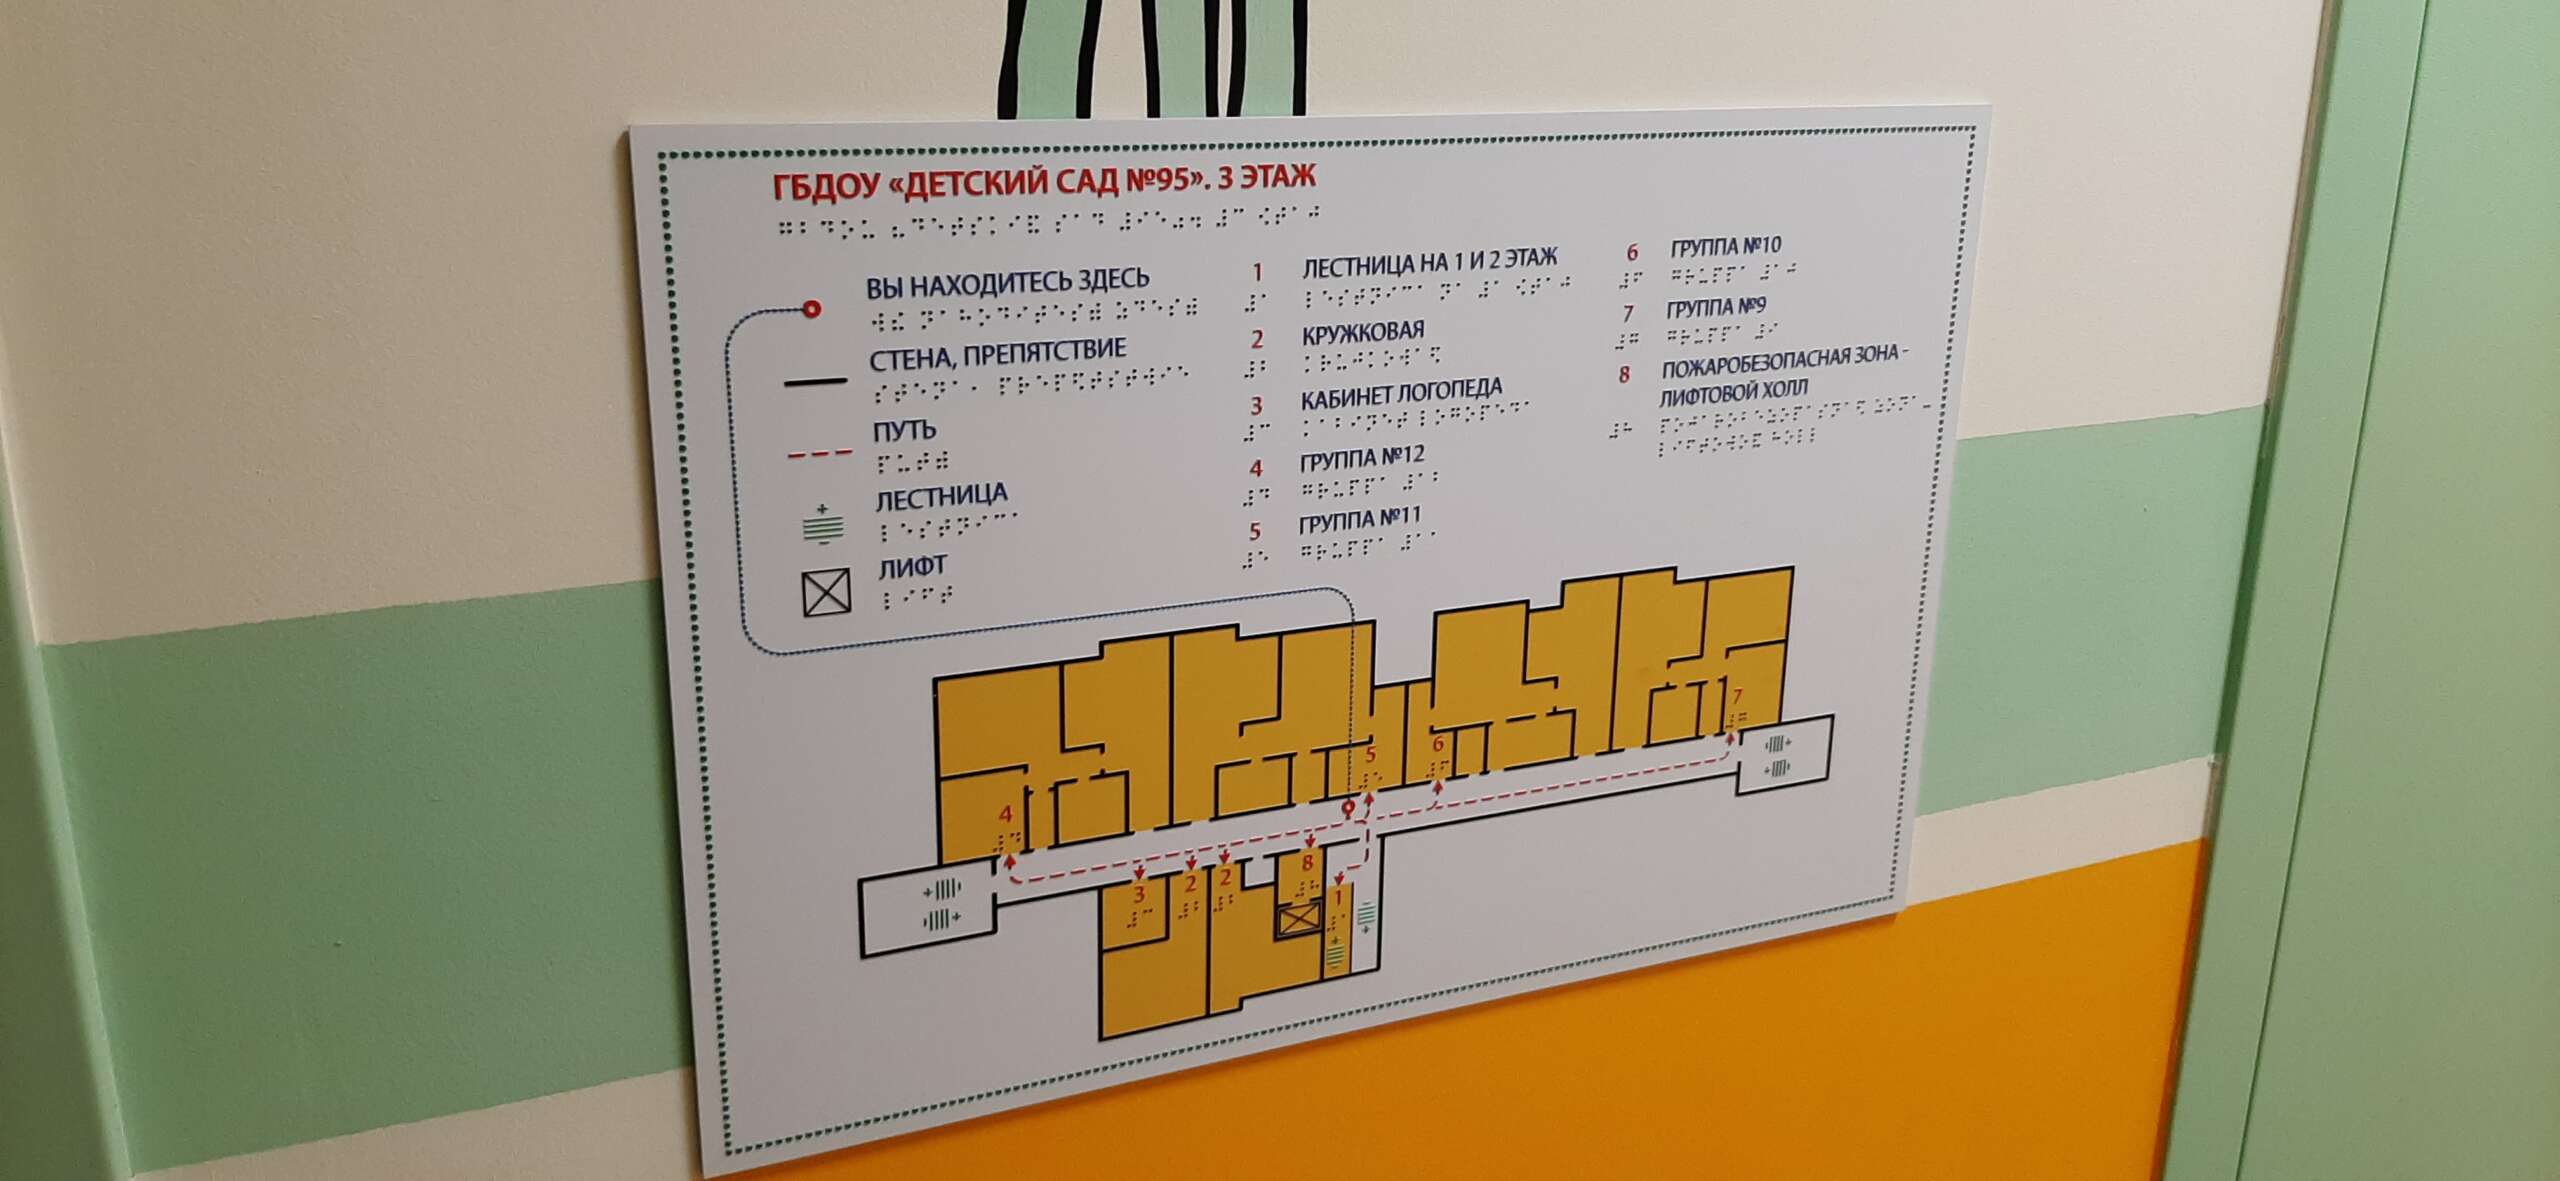 Тактильная табличка План эвакуации на каждом этаже, выполненный шрифтом азбуки Брайля